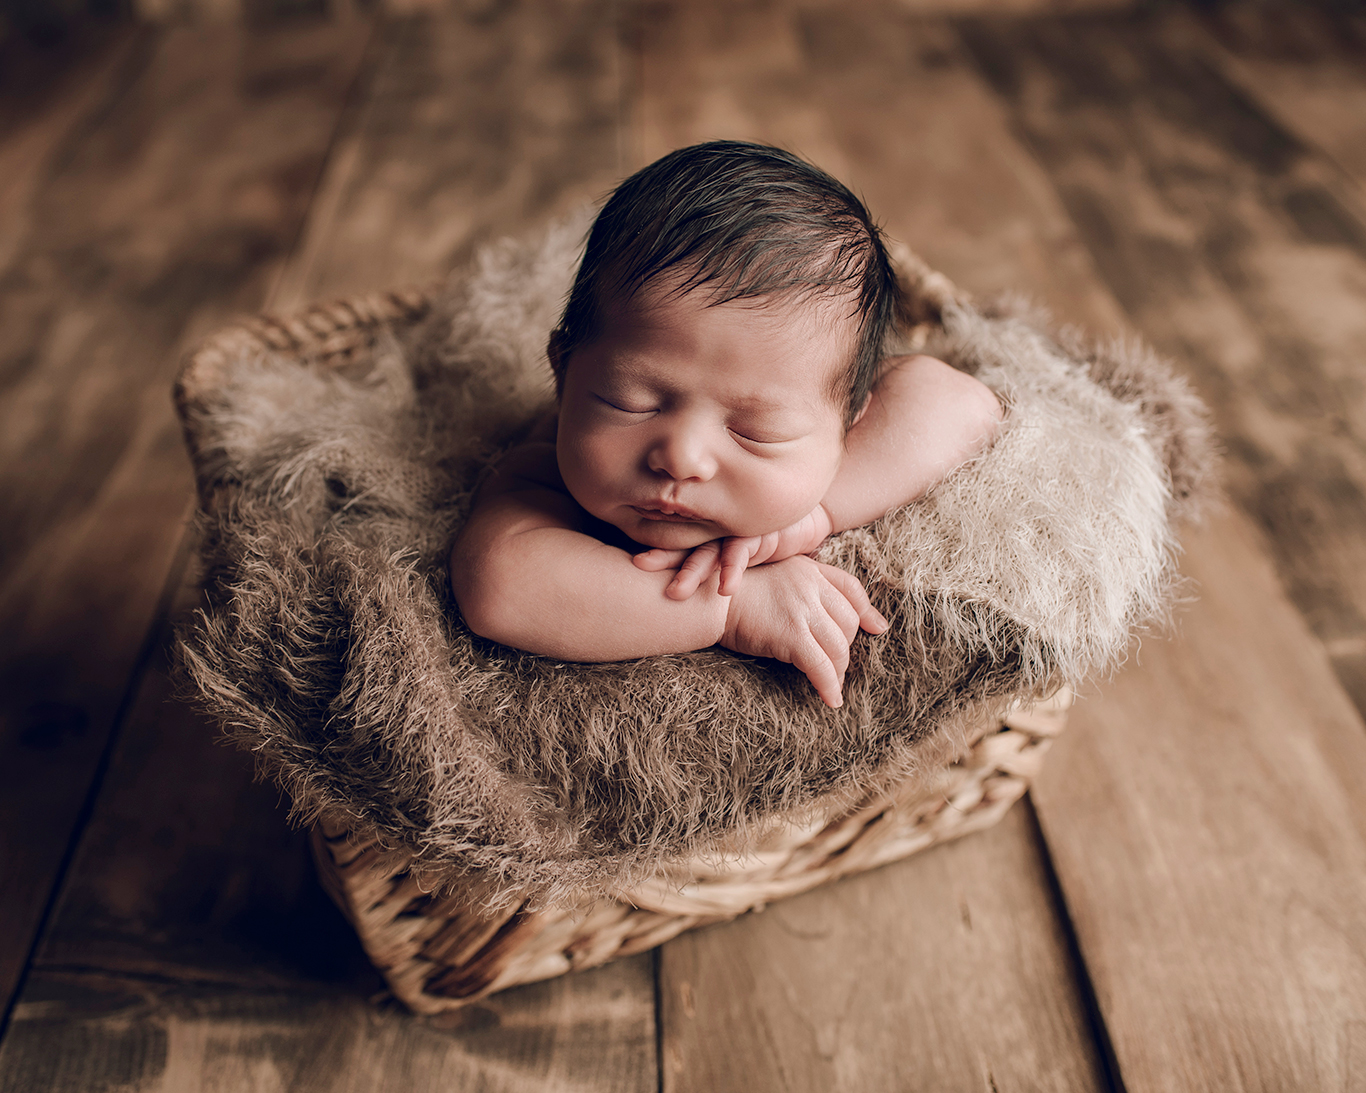 Oliver | Hershey Newborn Photography Studio | Hershey, Pa